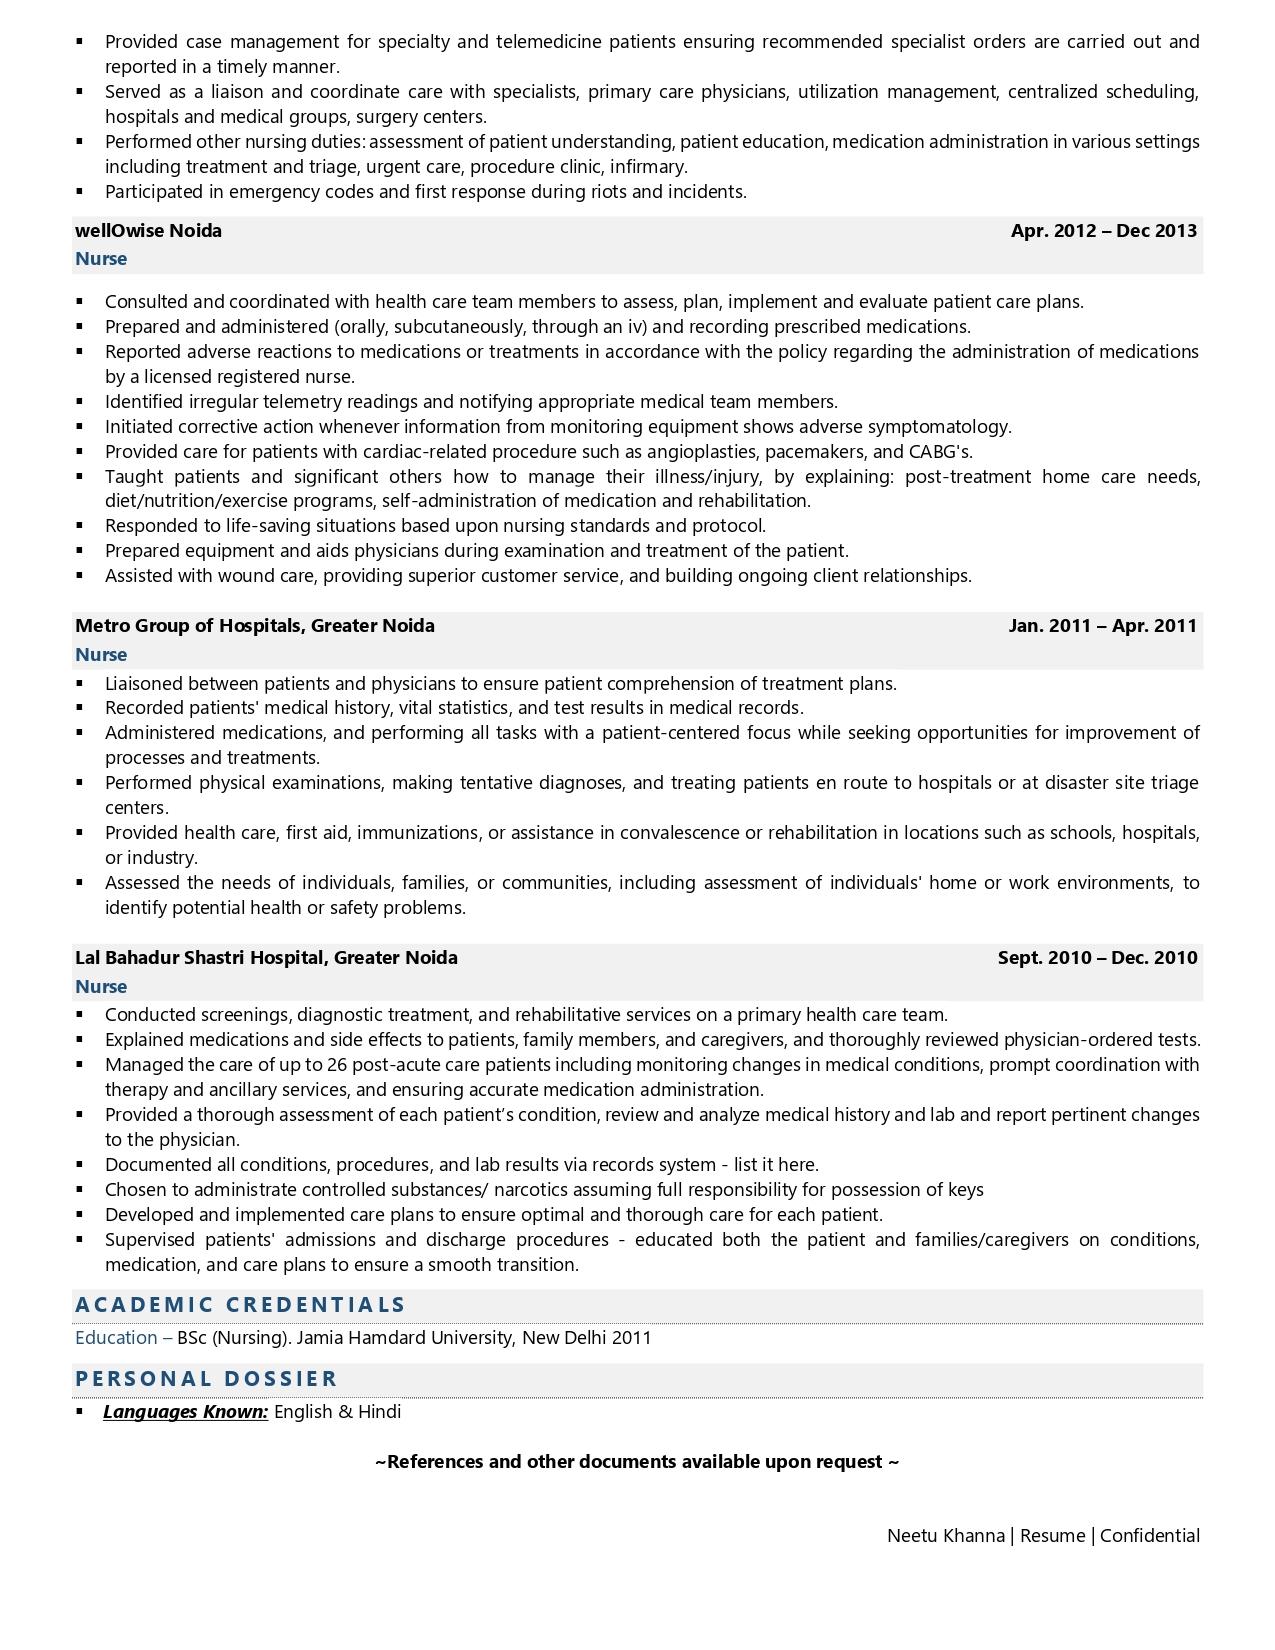 resume for registered nurse in australia